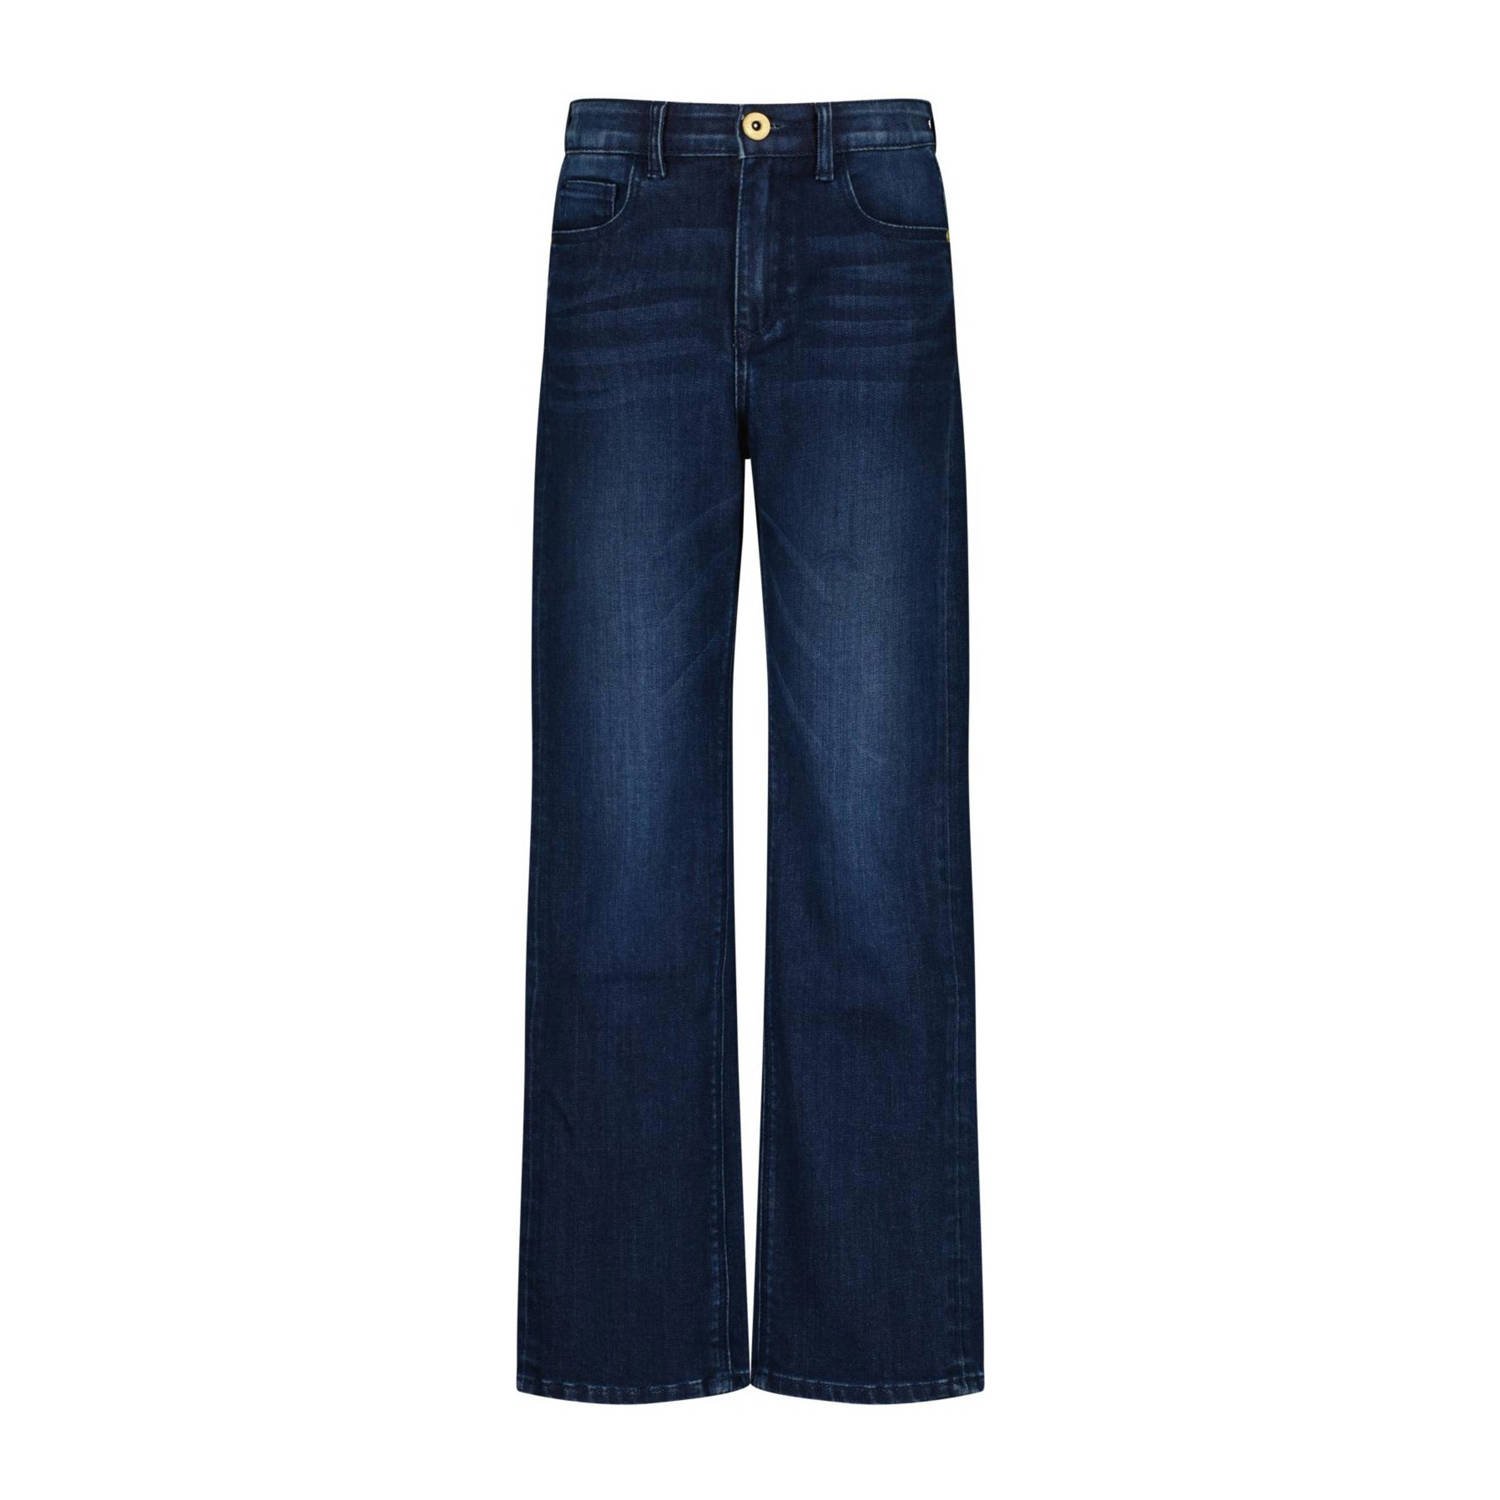 VINGINO loose fit jeans Cara medium blue denim Blauw Meisjes Stretchdenim 134